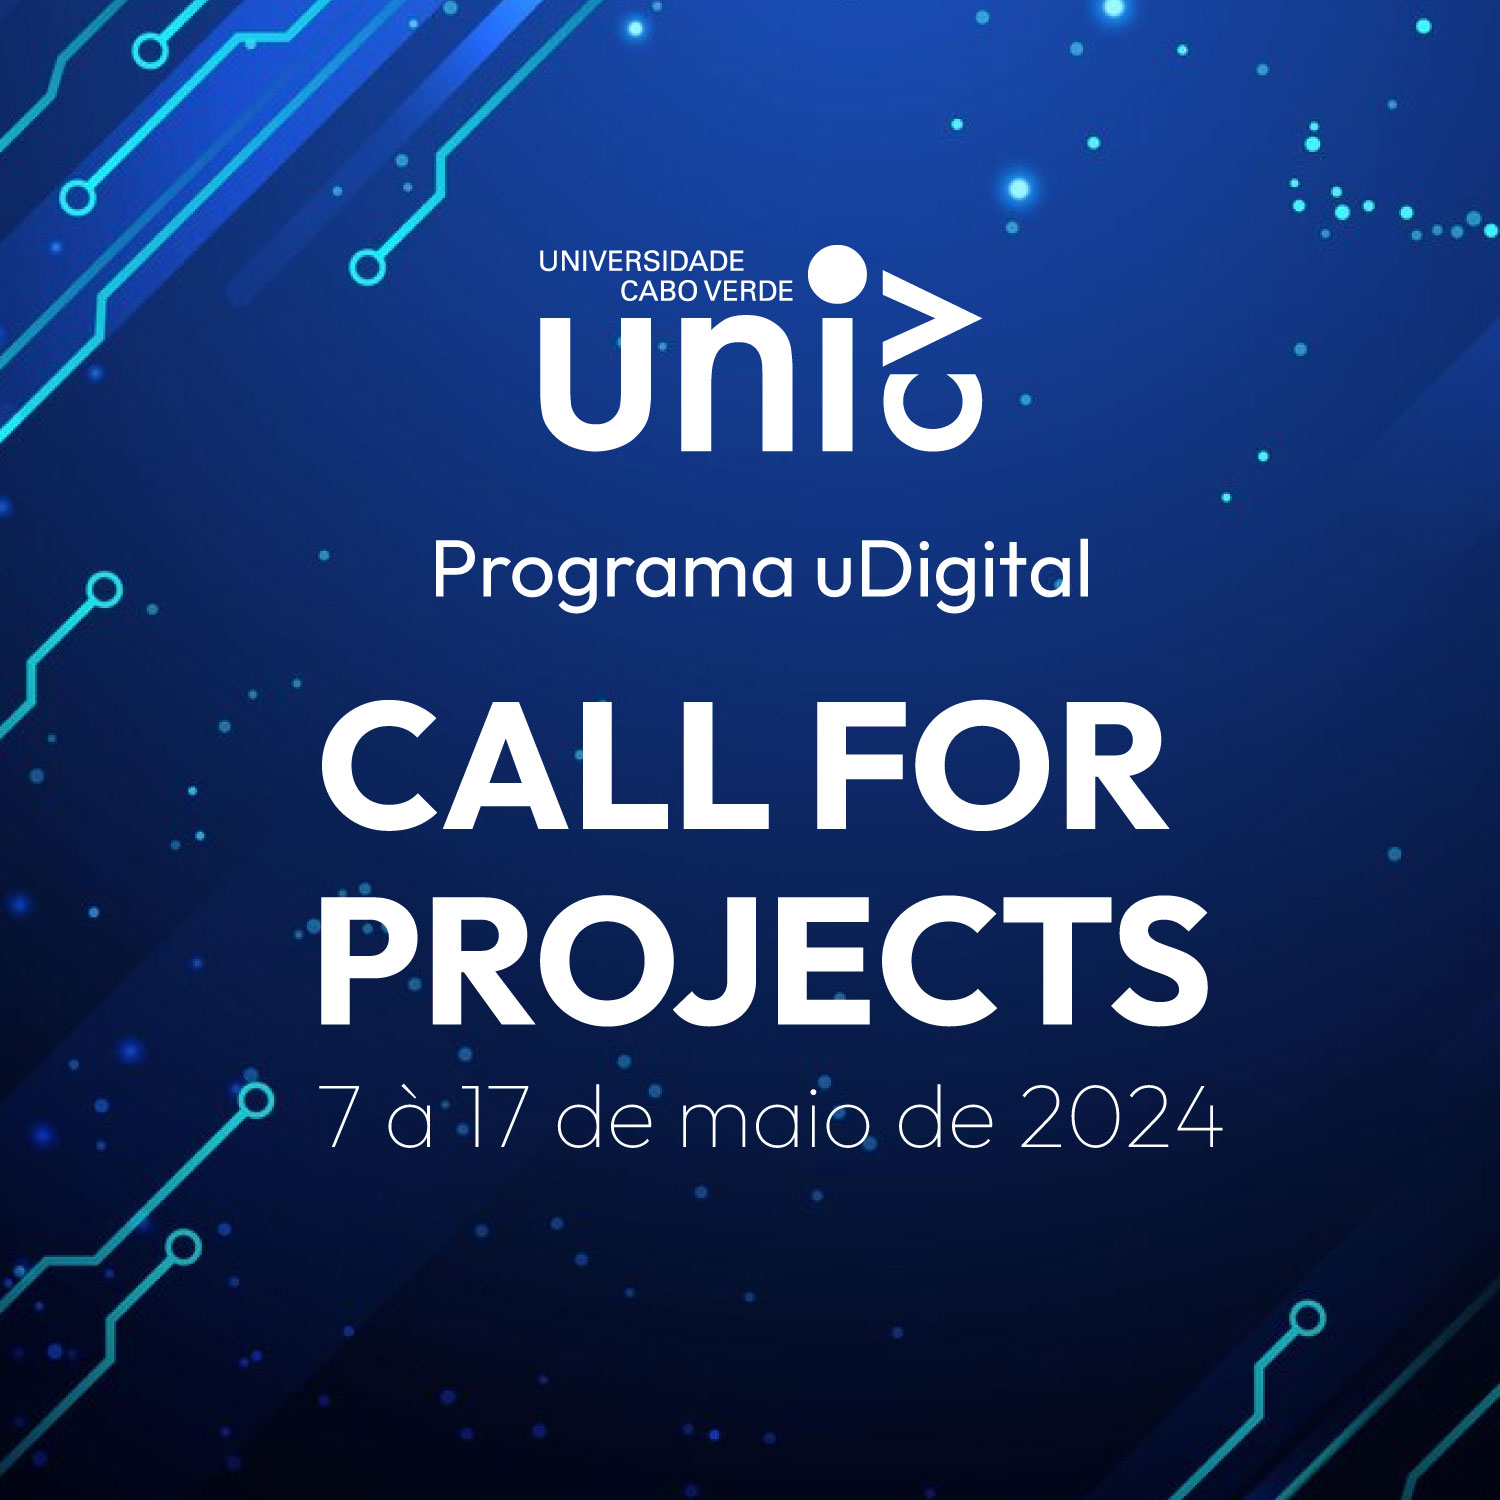 Programa uDigital - Submissão de projetos até 15 de maio